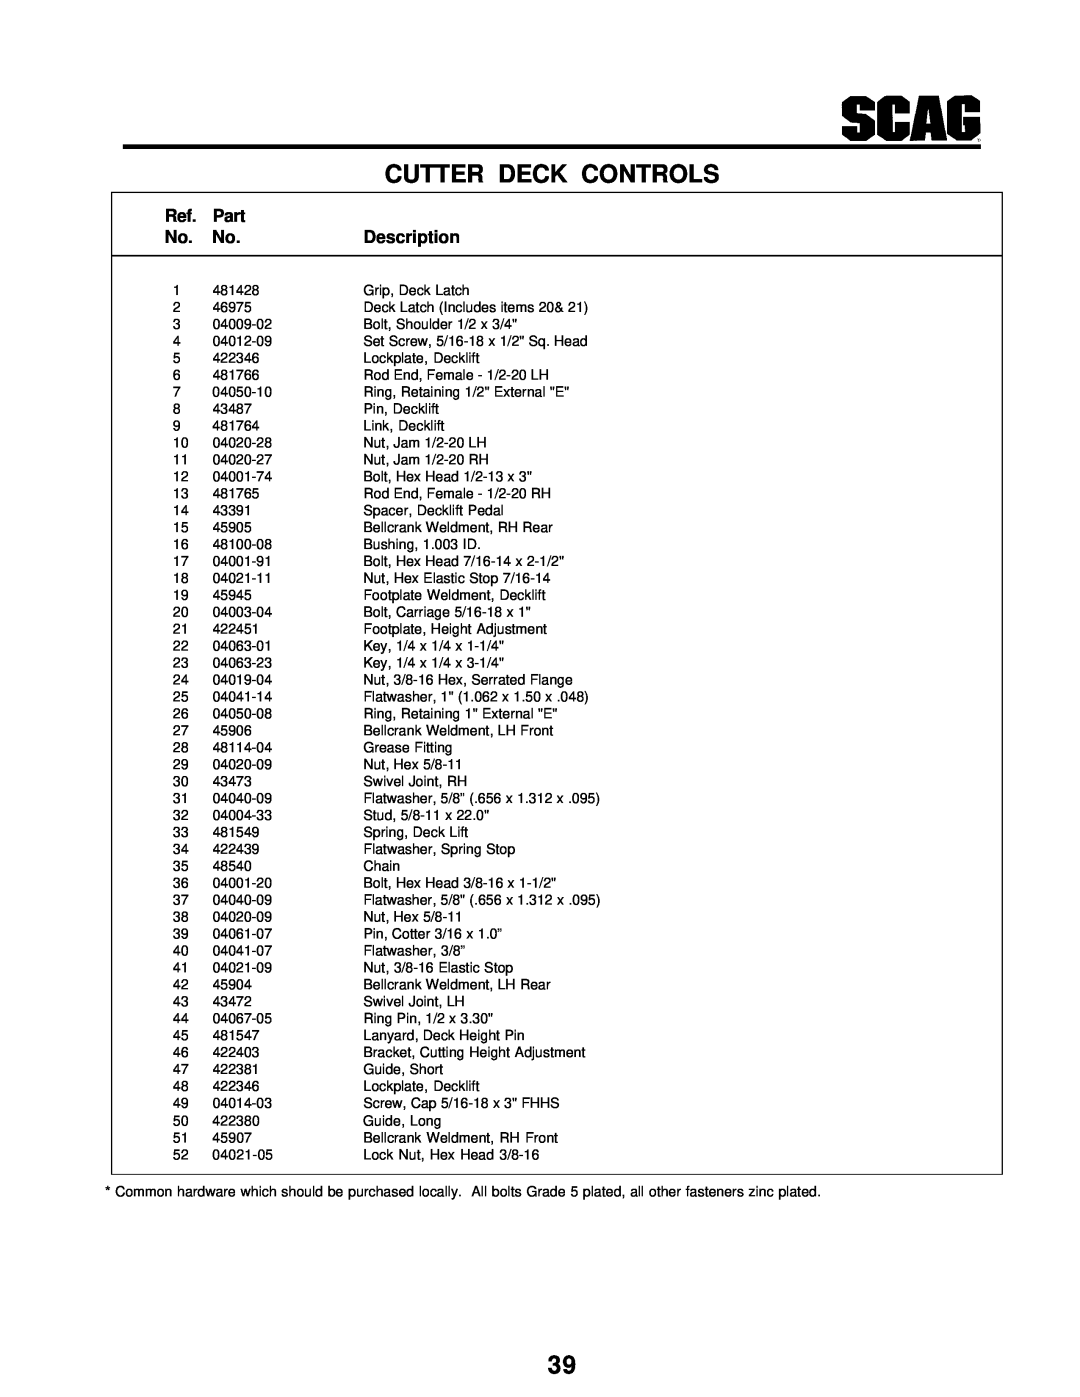 Scag Power Equipment STT-31BSG manual Cutter Deck Controls, Part, Description 